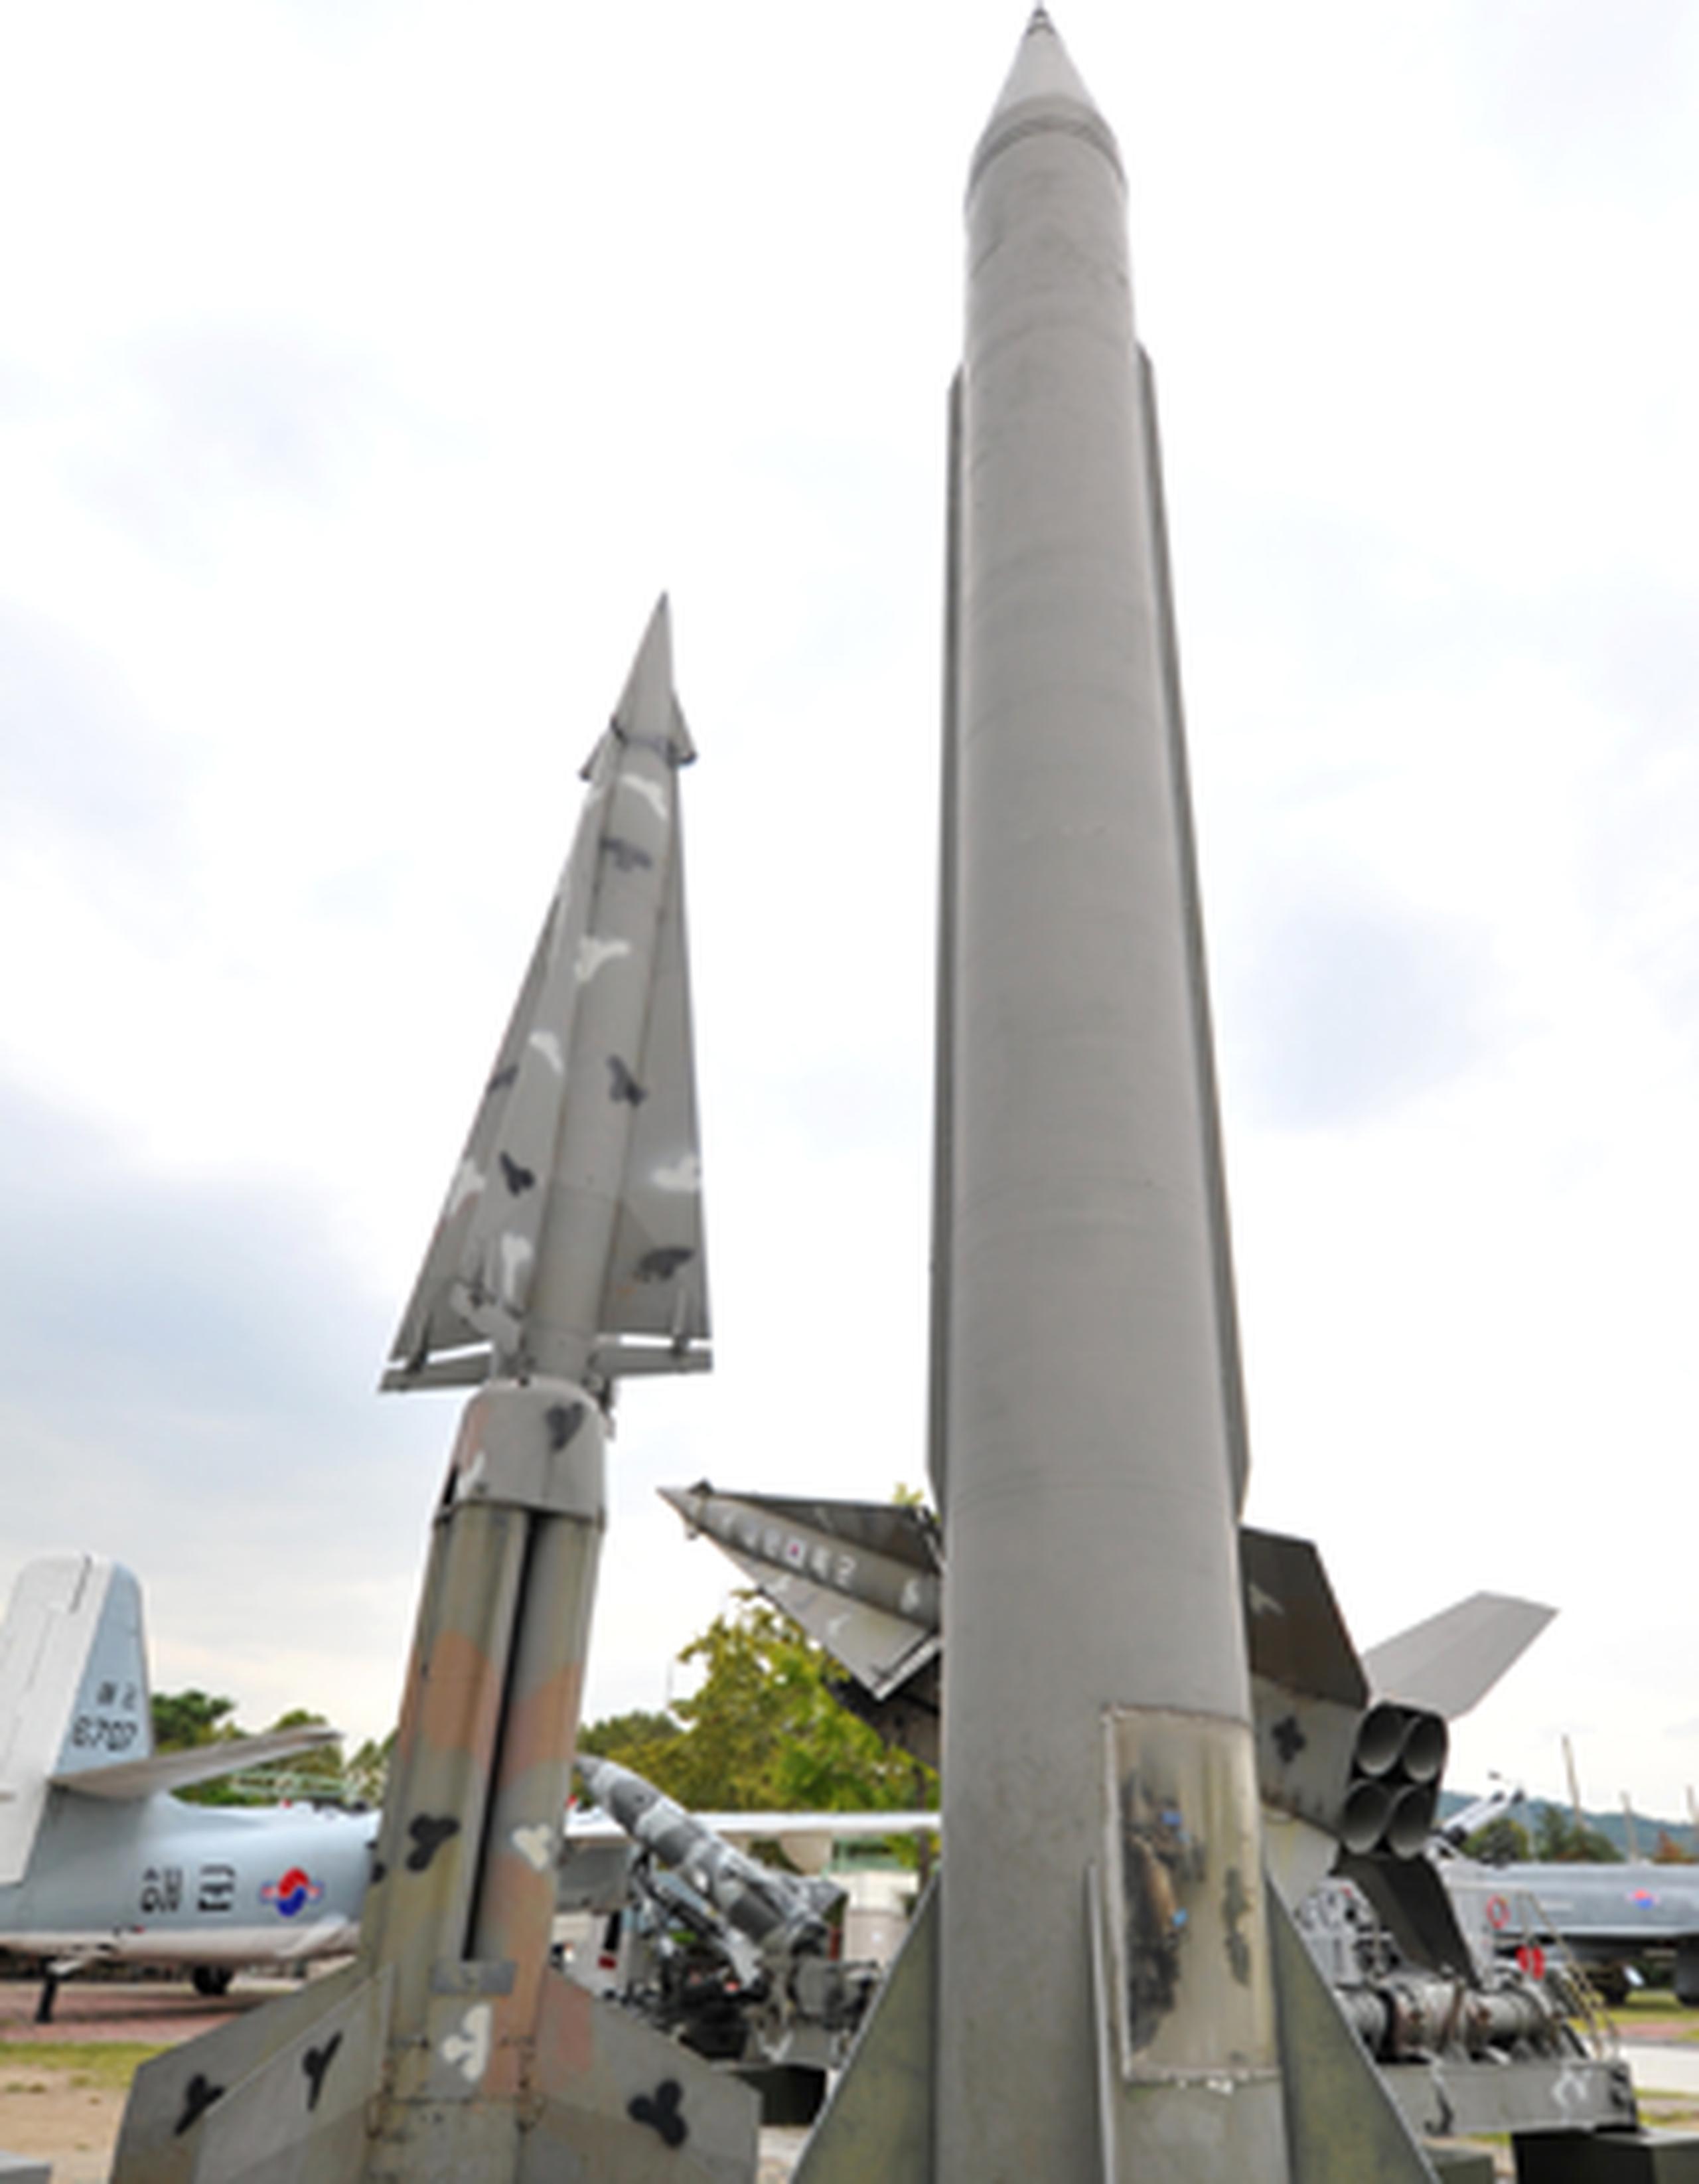 El Ministerio surcoreano estimó que se trata de cuatro misiles tipo Scud, un proyectil táctico desarrollado por la desaparecida Unión Soviética durante la Guerra Fría. (Archivo)